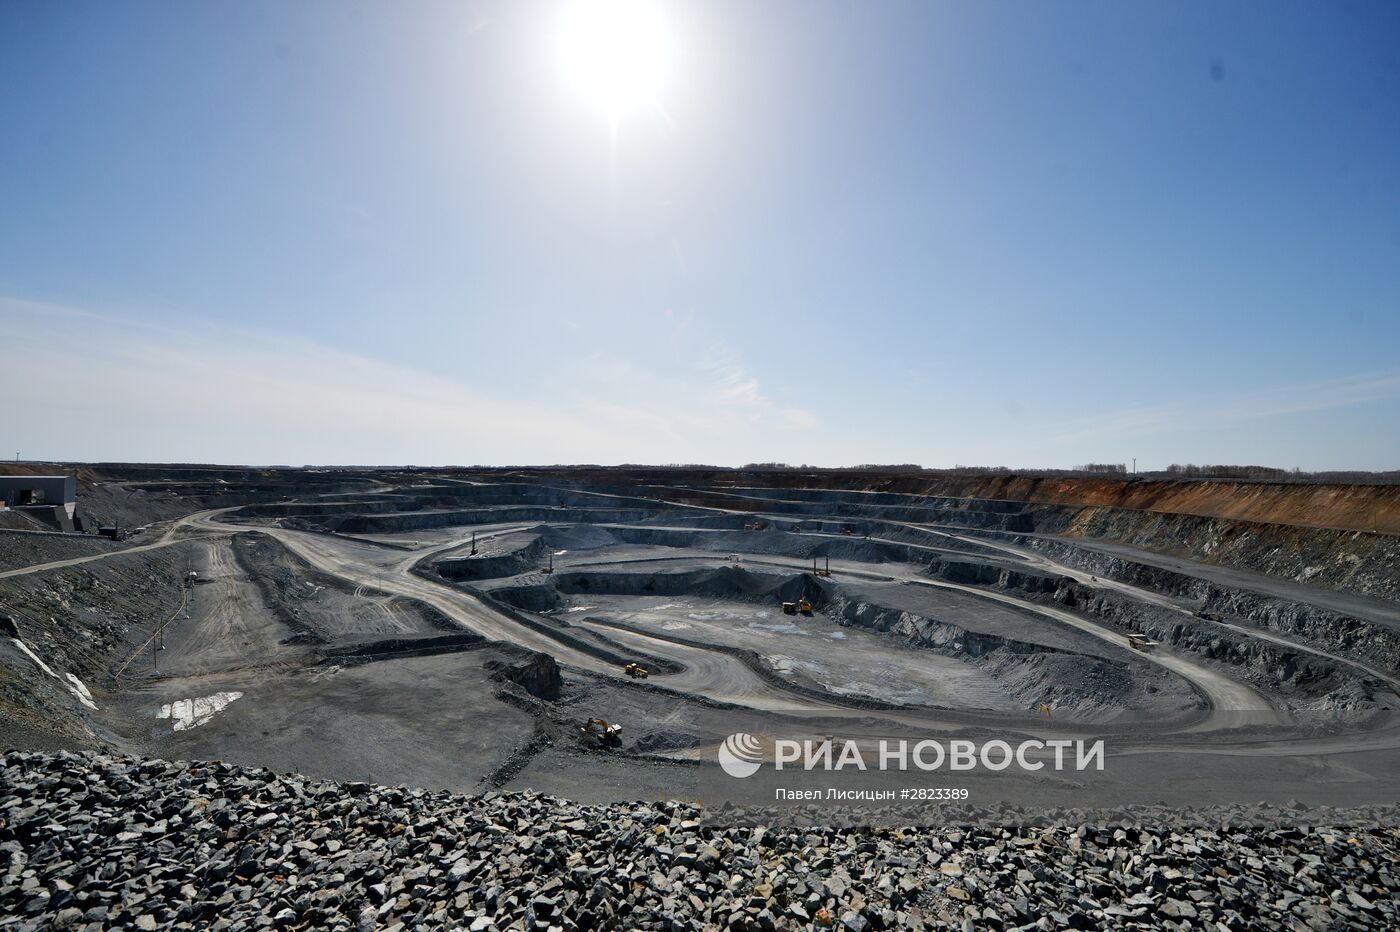 Михеевский горно-обогатительный комбинат в Челябинской области